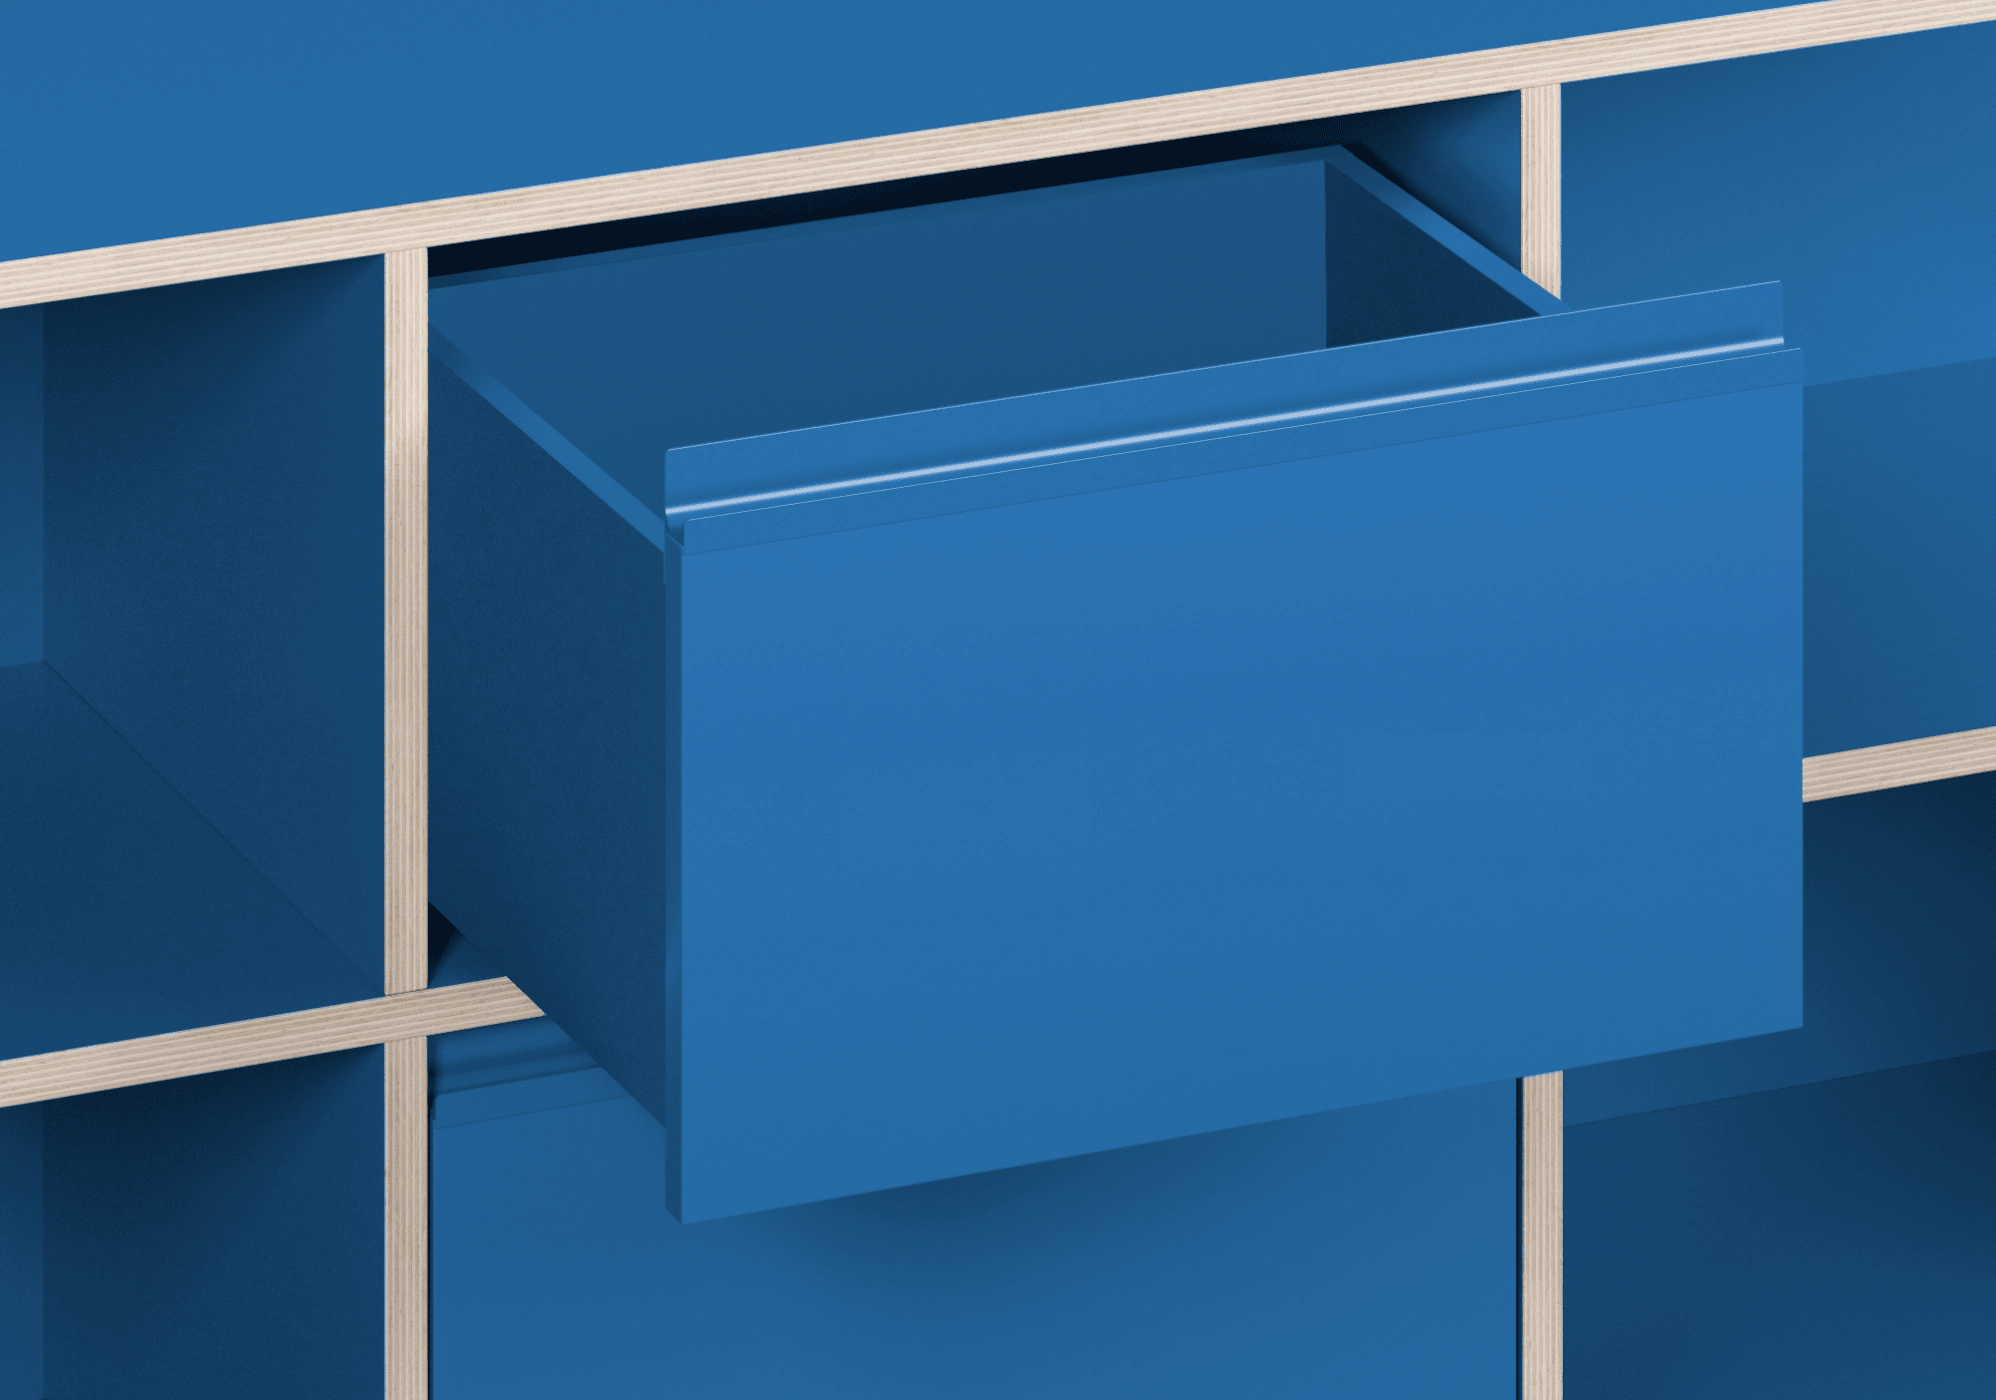 Grosses Blaue Multiplexplatte Sideboard mit Türen, Schubladen, Ruckwanden, Kabelmanagement und Sockel multiplexplatten - 275x93x40cm 8